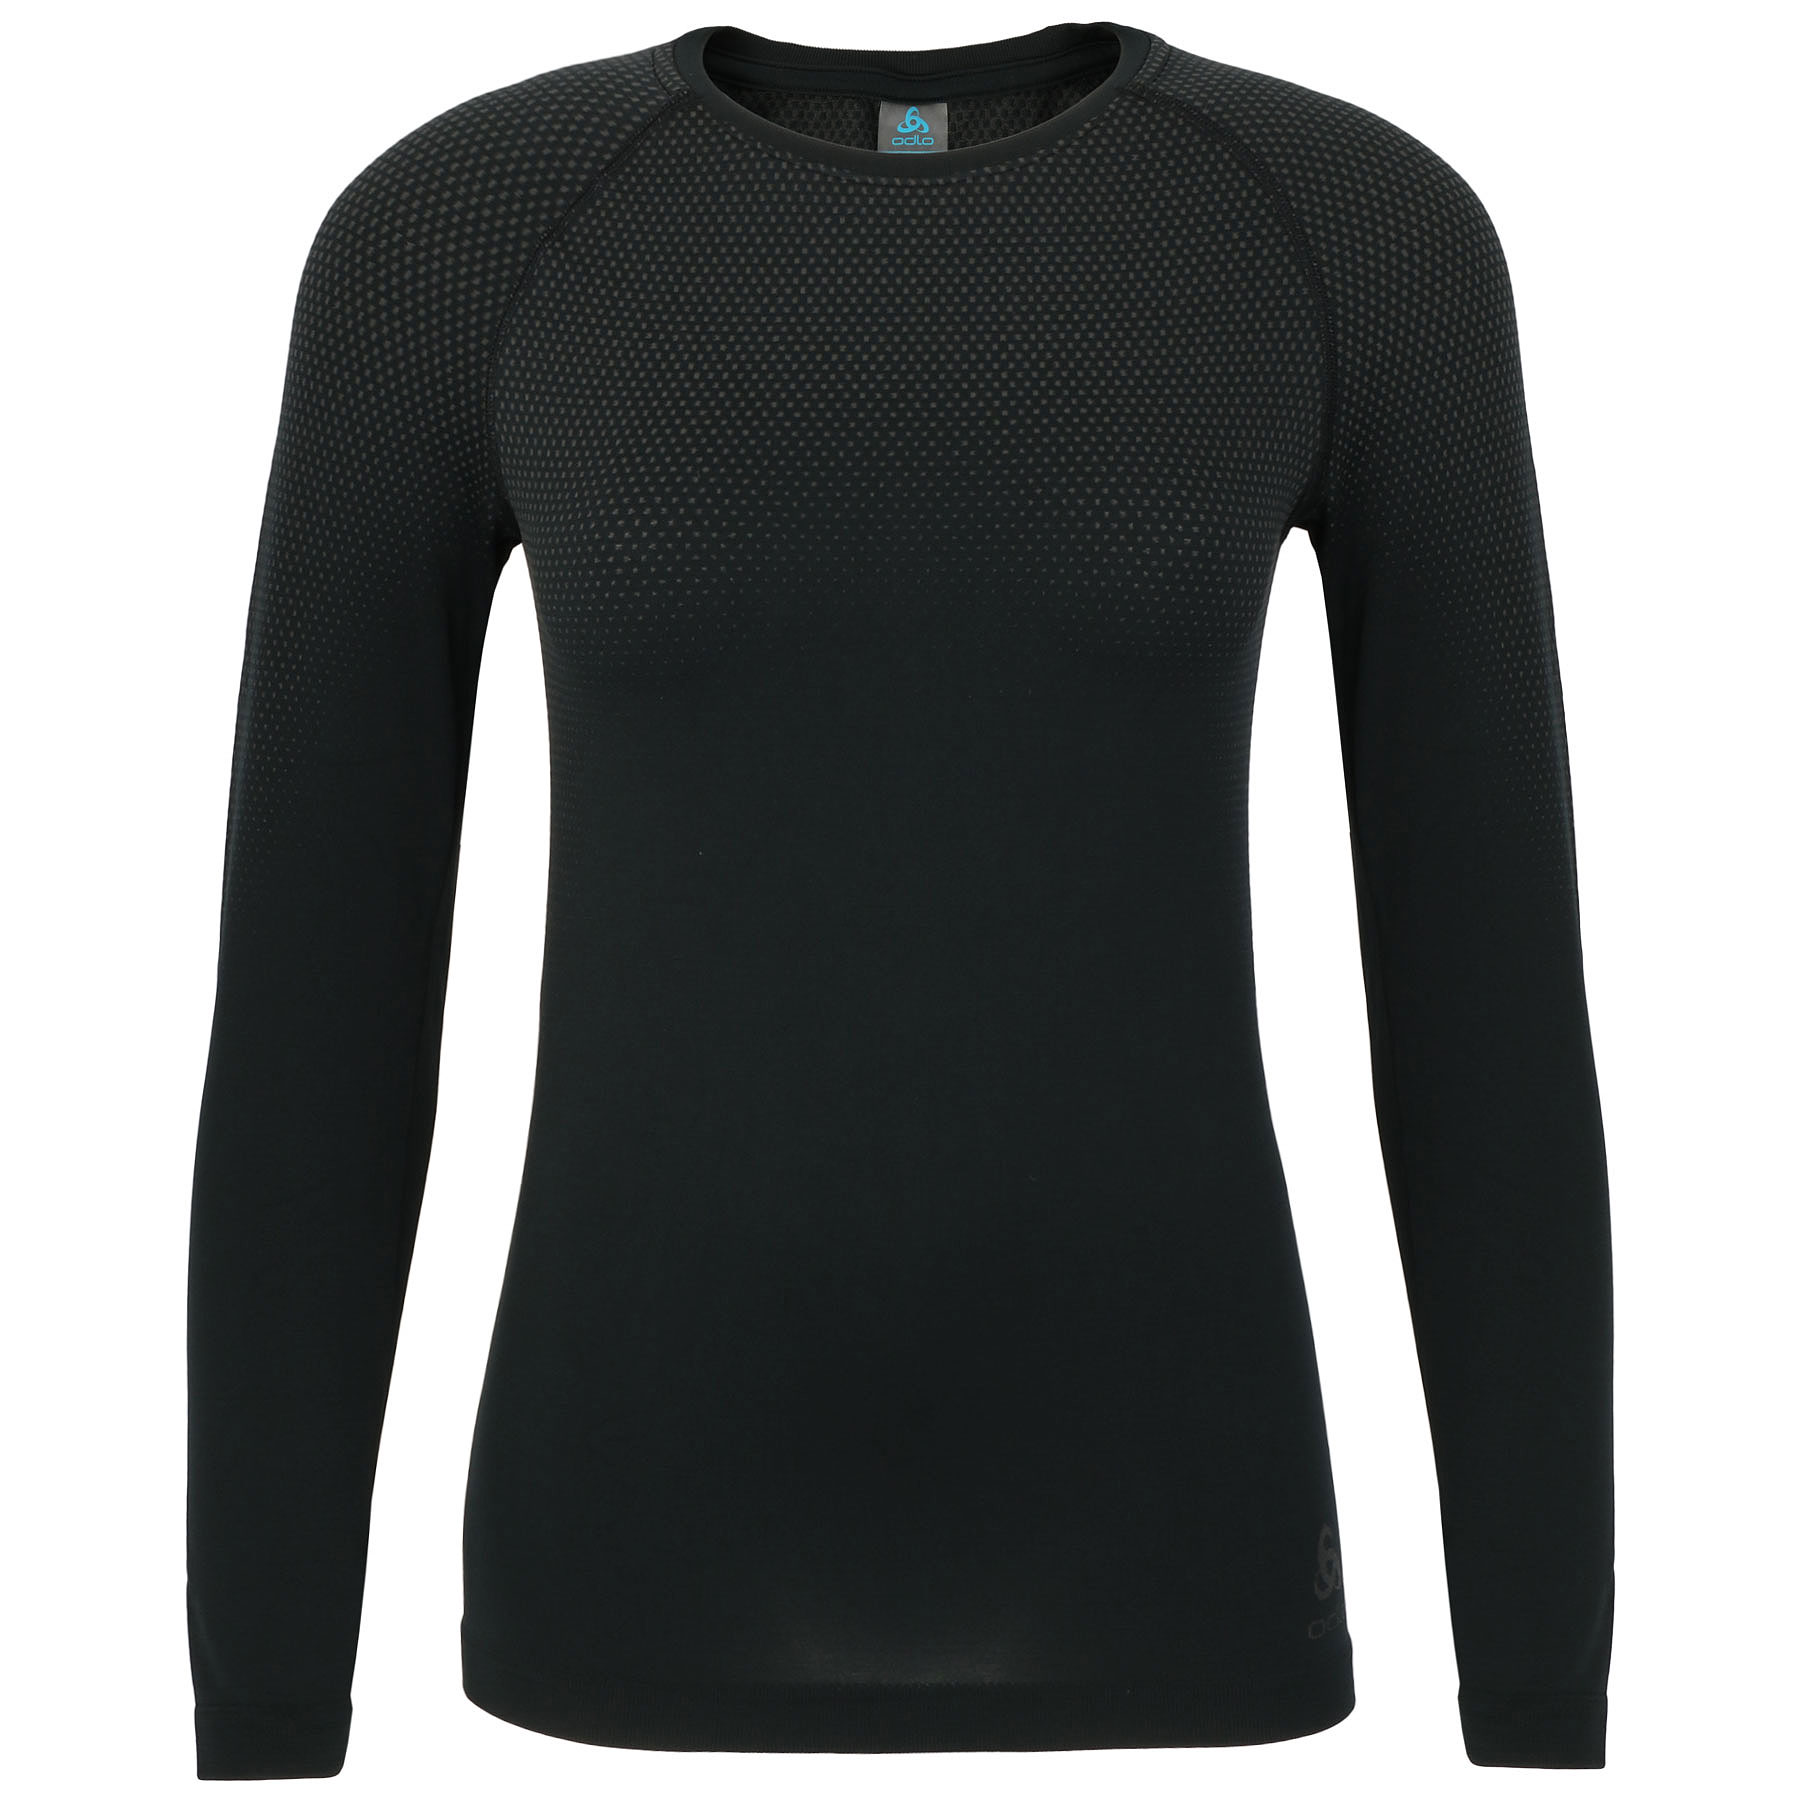 Productfoto van Odlo Performance Light Hemd met Lange Mouwen Dames - zwart